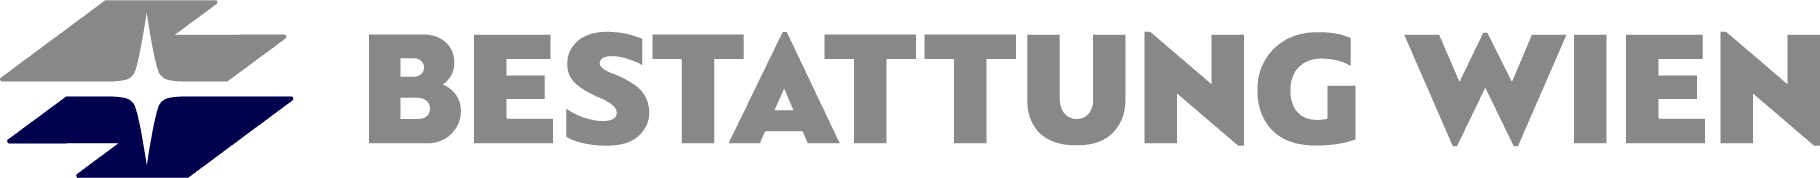 Logo BESTATTUNG WIEN - Kundenservice Währing